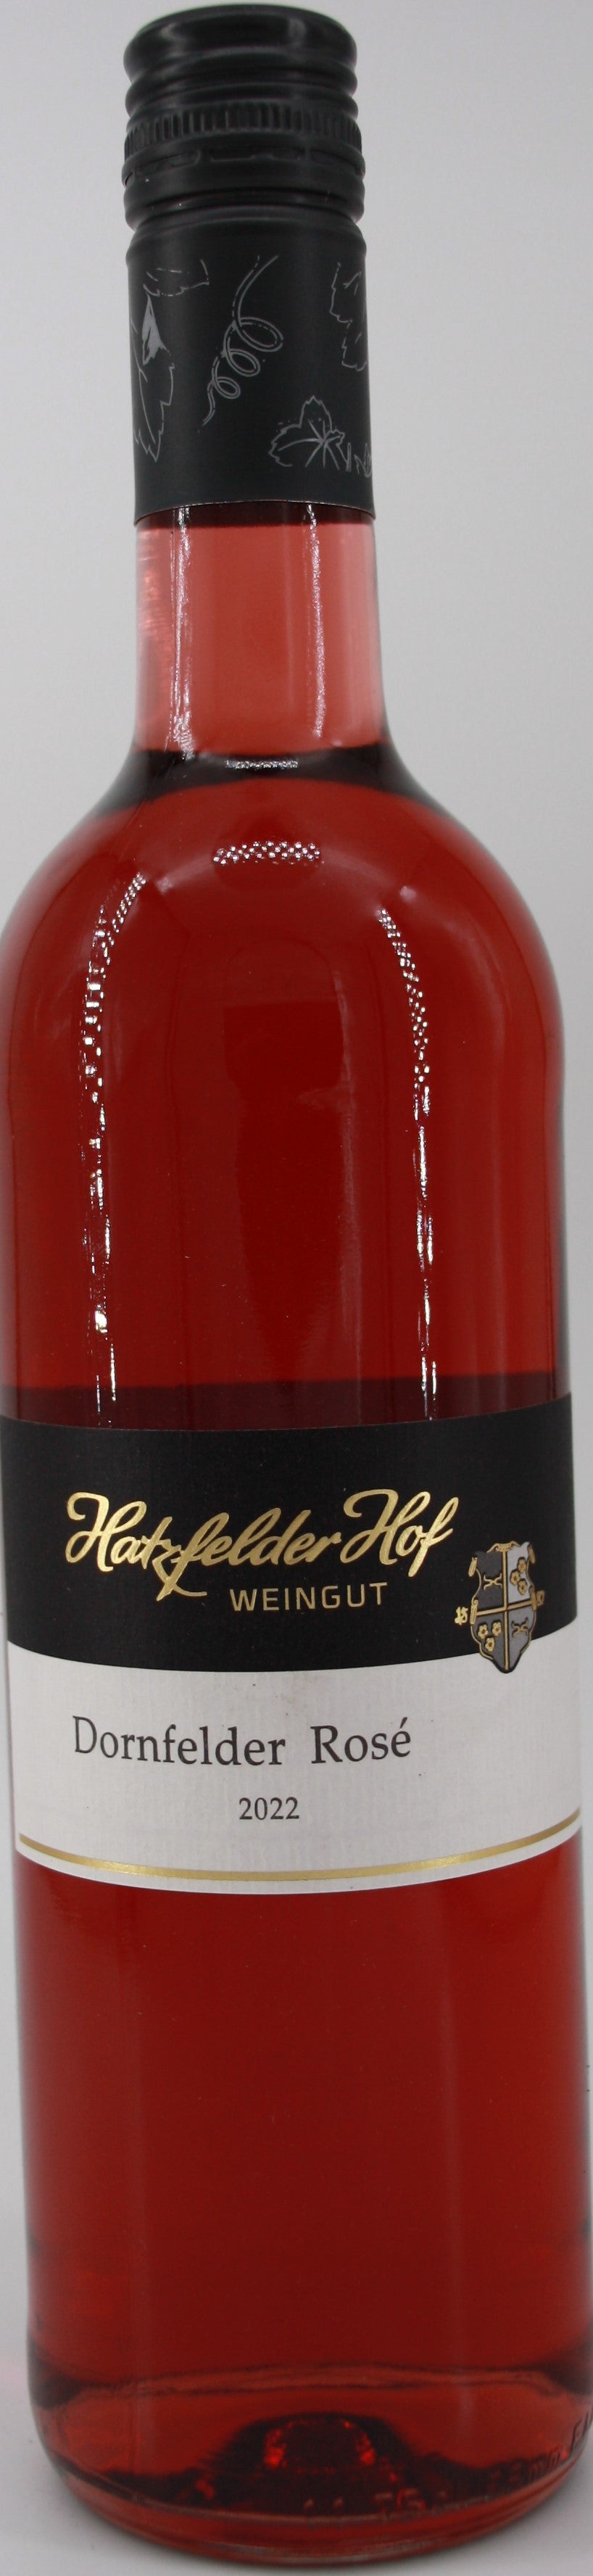 2022 Dornfelder Rosé - – Shop Obenauer lieblich Weingut